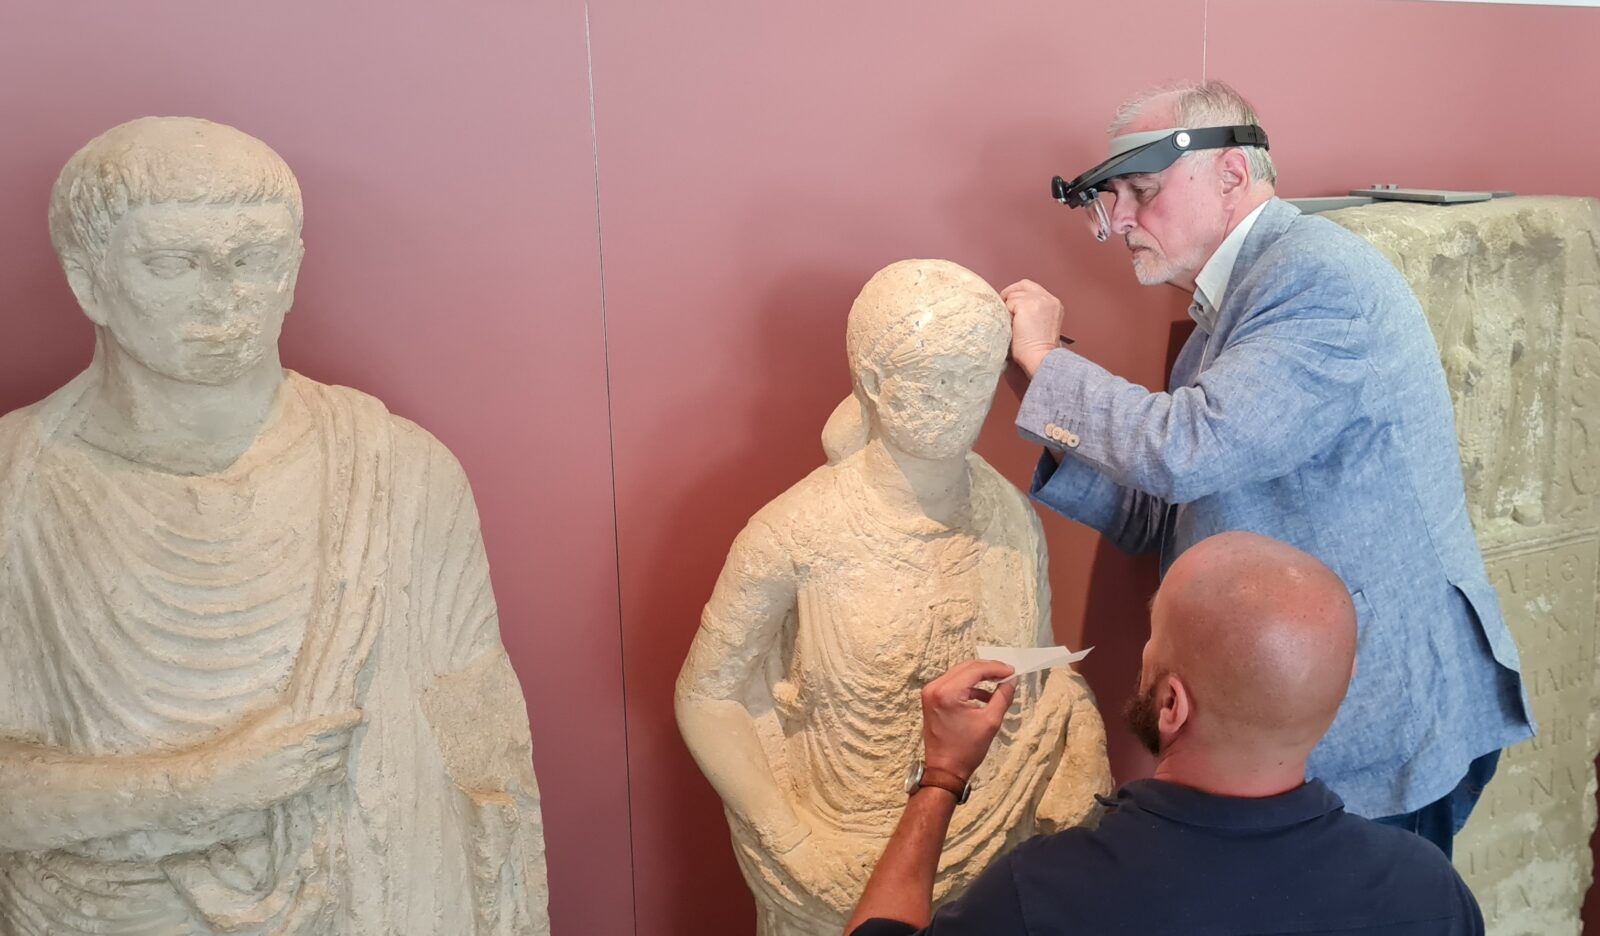 Ein älterer Mann mit einer Stirnlupe und einem Skalpell arbeitet konzentriert am Kopf einer lebensgroßen Grabfigur. Ein zweiter Mann hilft ihm.